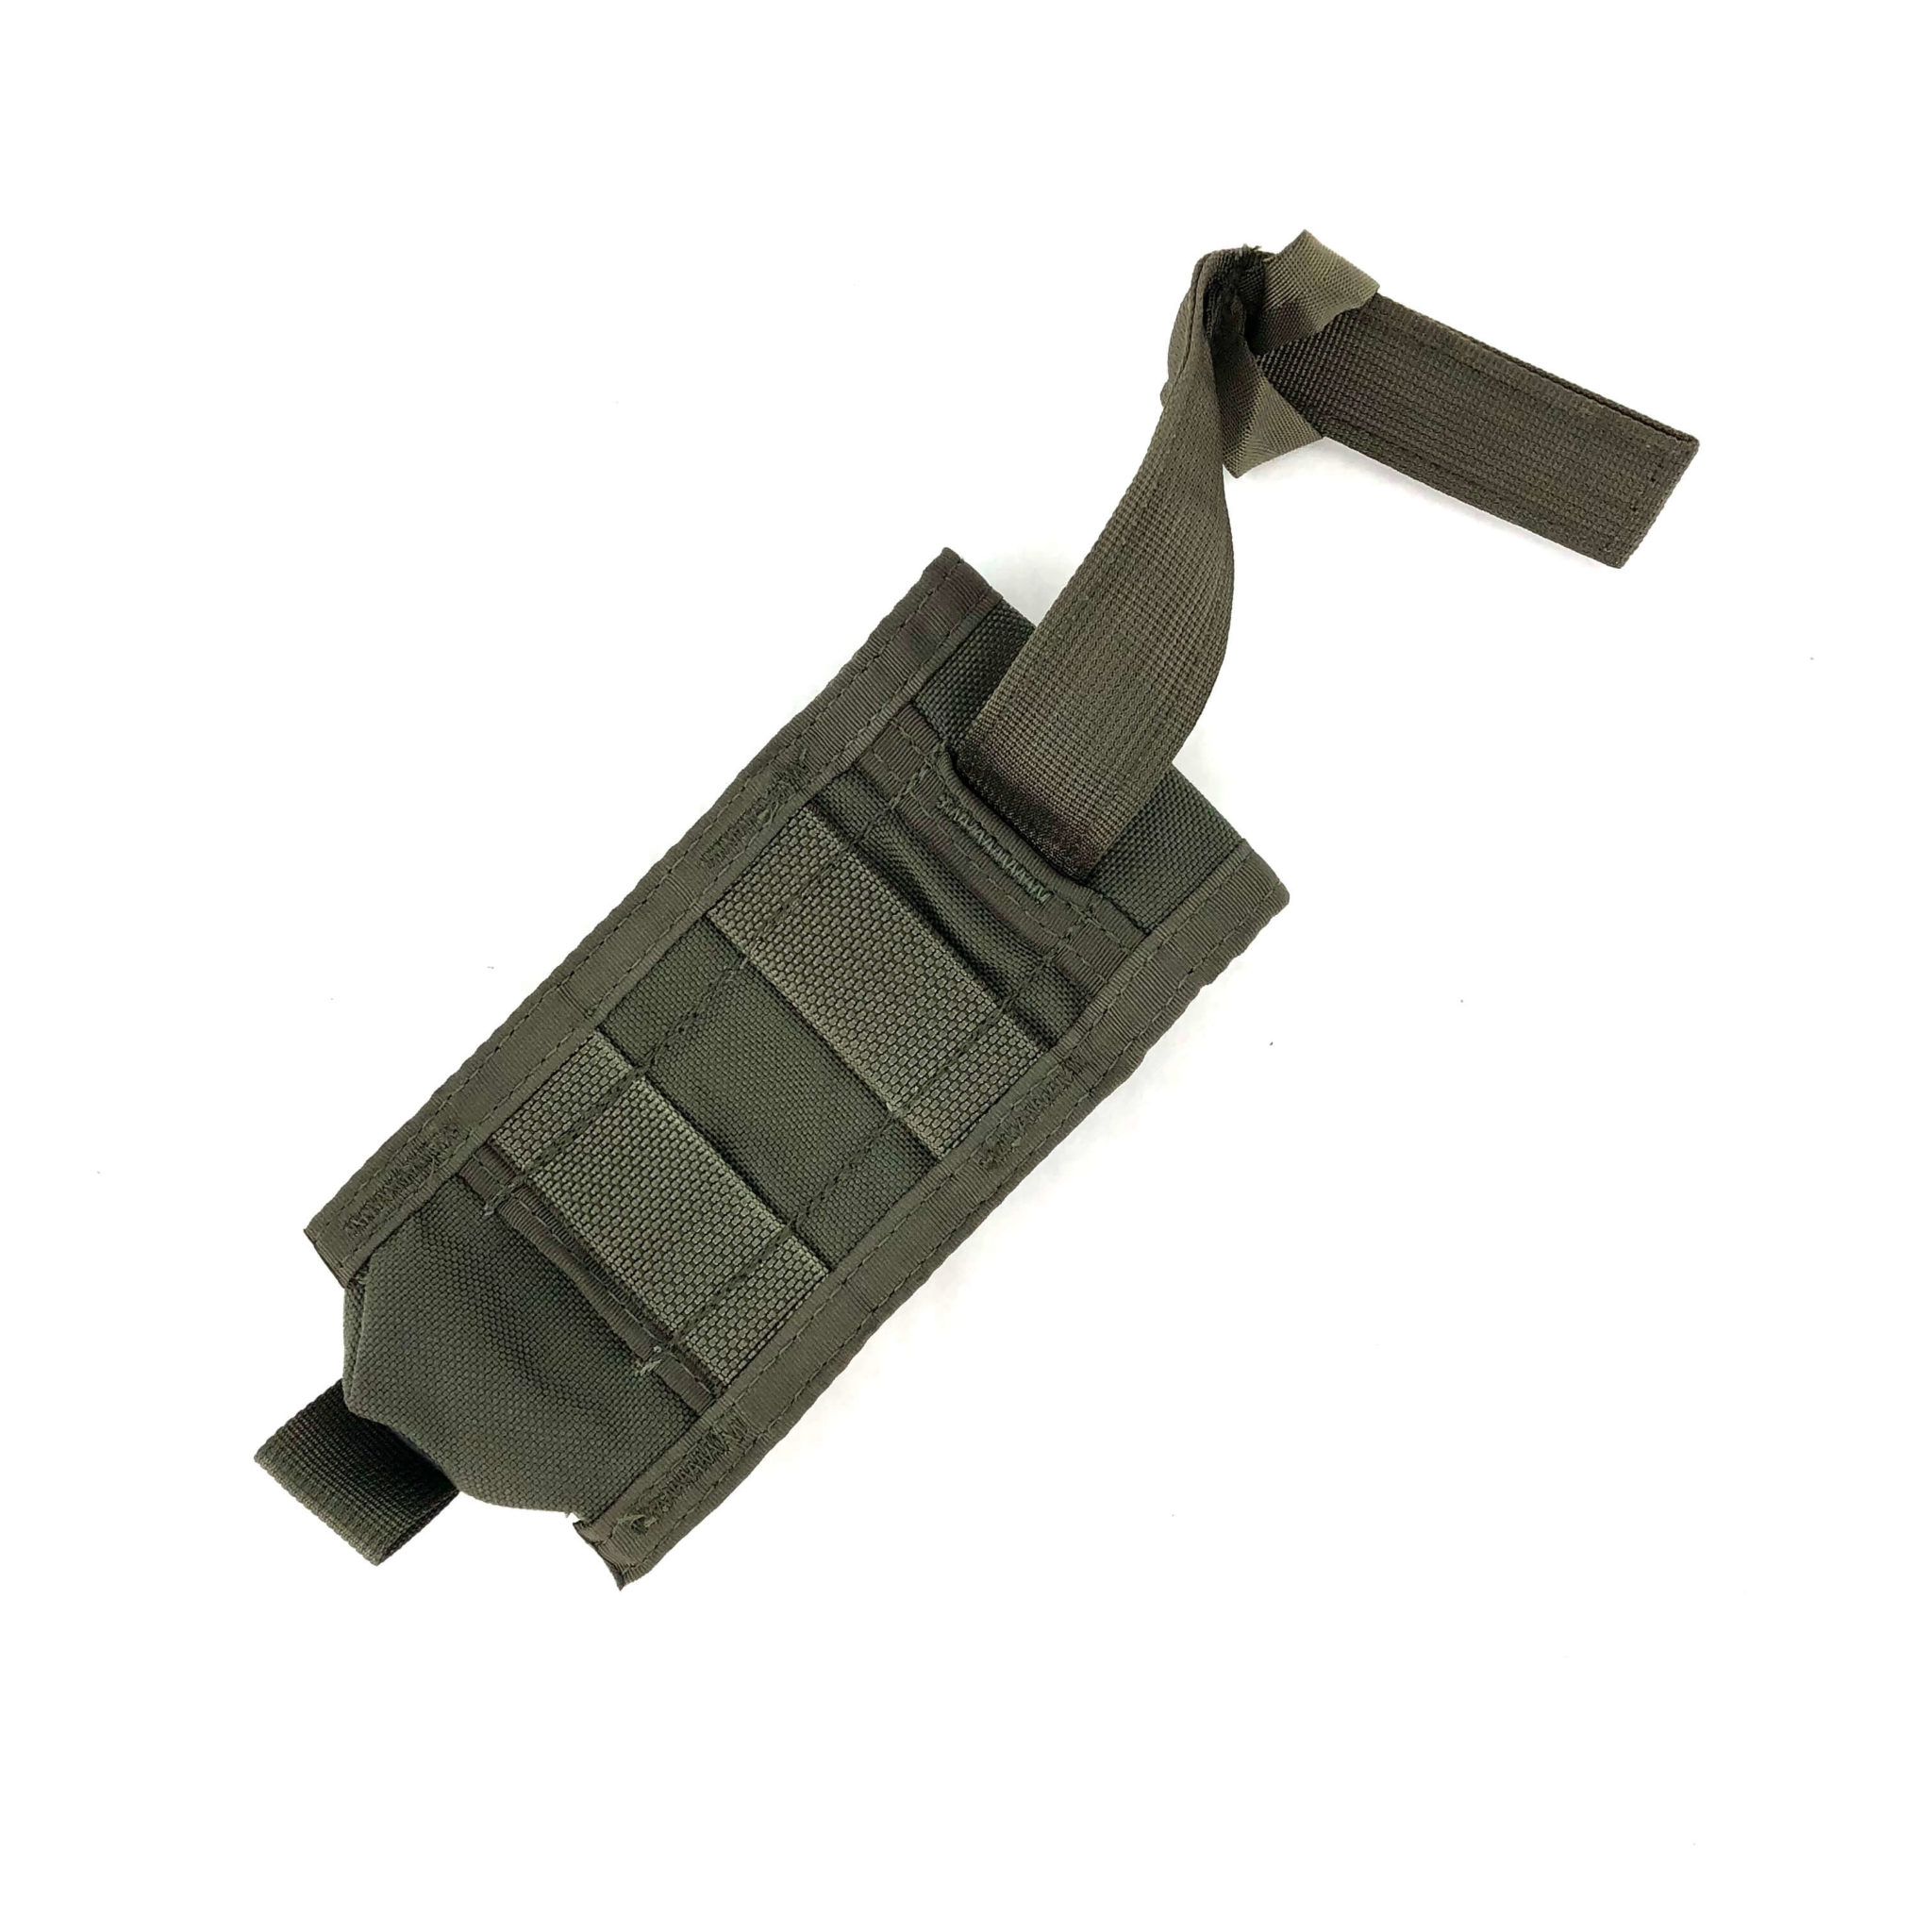 MSA Paraclete Smoke Grenade Pouch P/N MSA-RSSG0816 